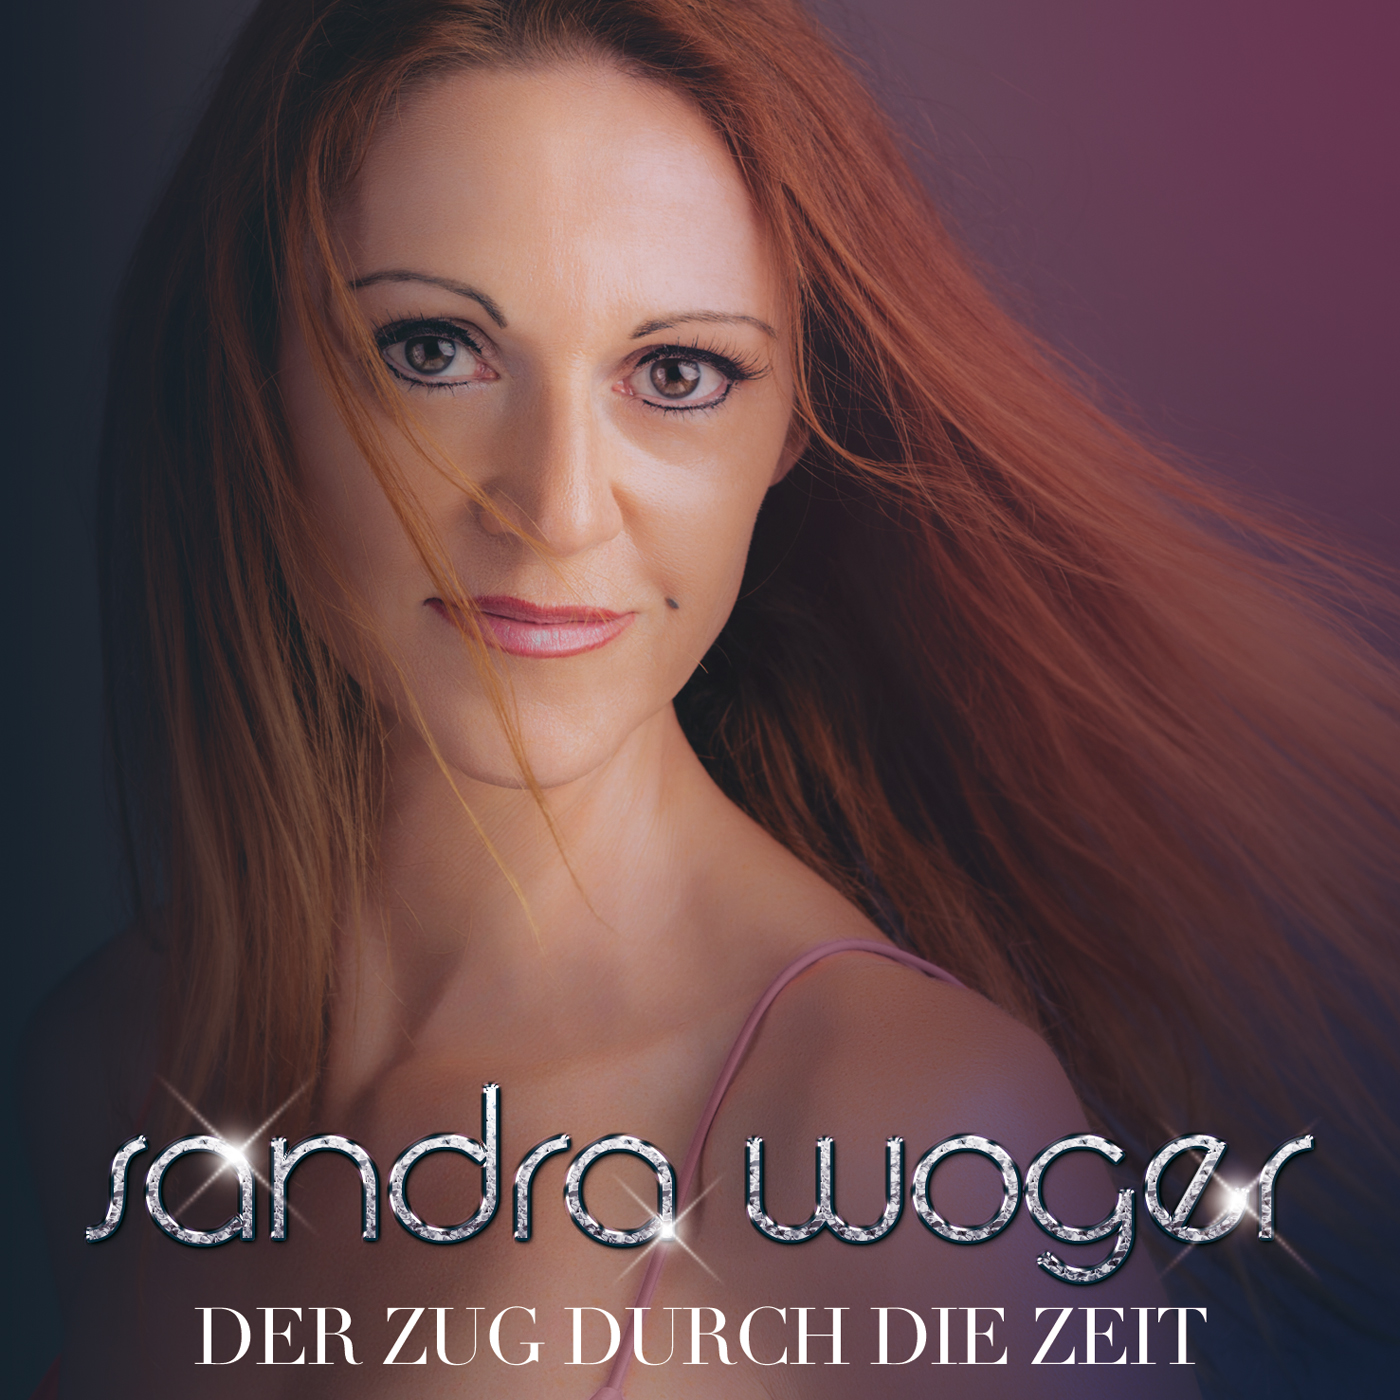 Sandra Woger - Der Zug durch die Zeit - Cover300dpi.jpg